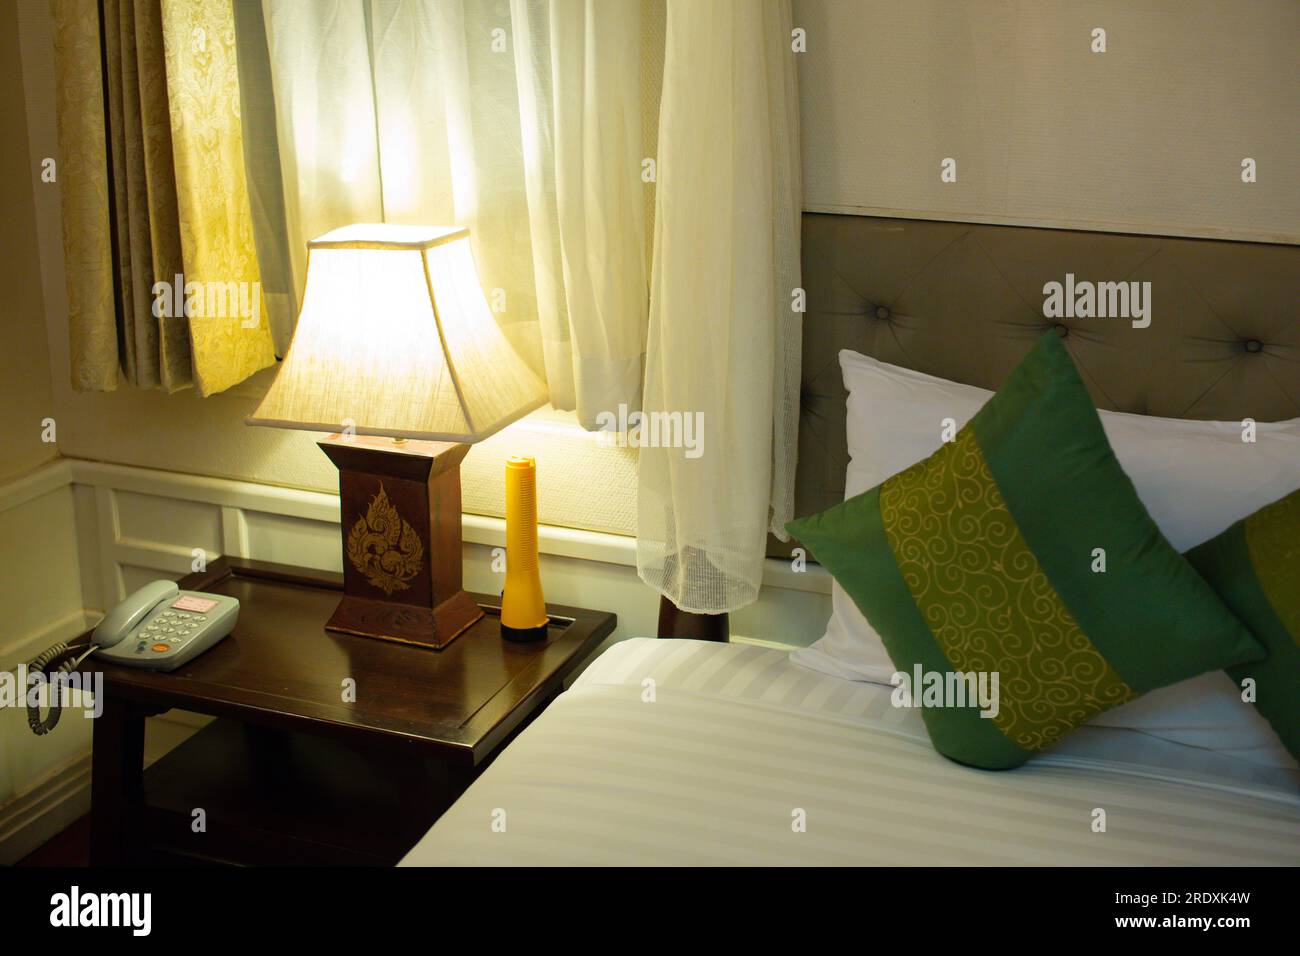 Lit avec couvertures et oreillers avec lampe électrique sur la table de chevet dans la chambre. Design de chambre simple et confortable pour la vie quotidienne. Horizontal Banque D'Images